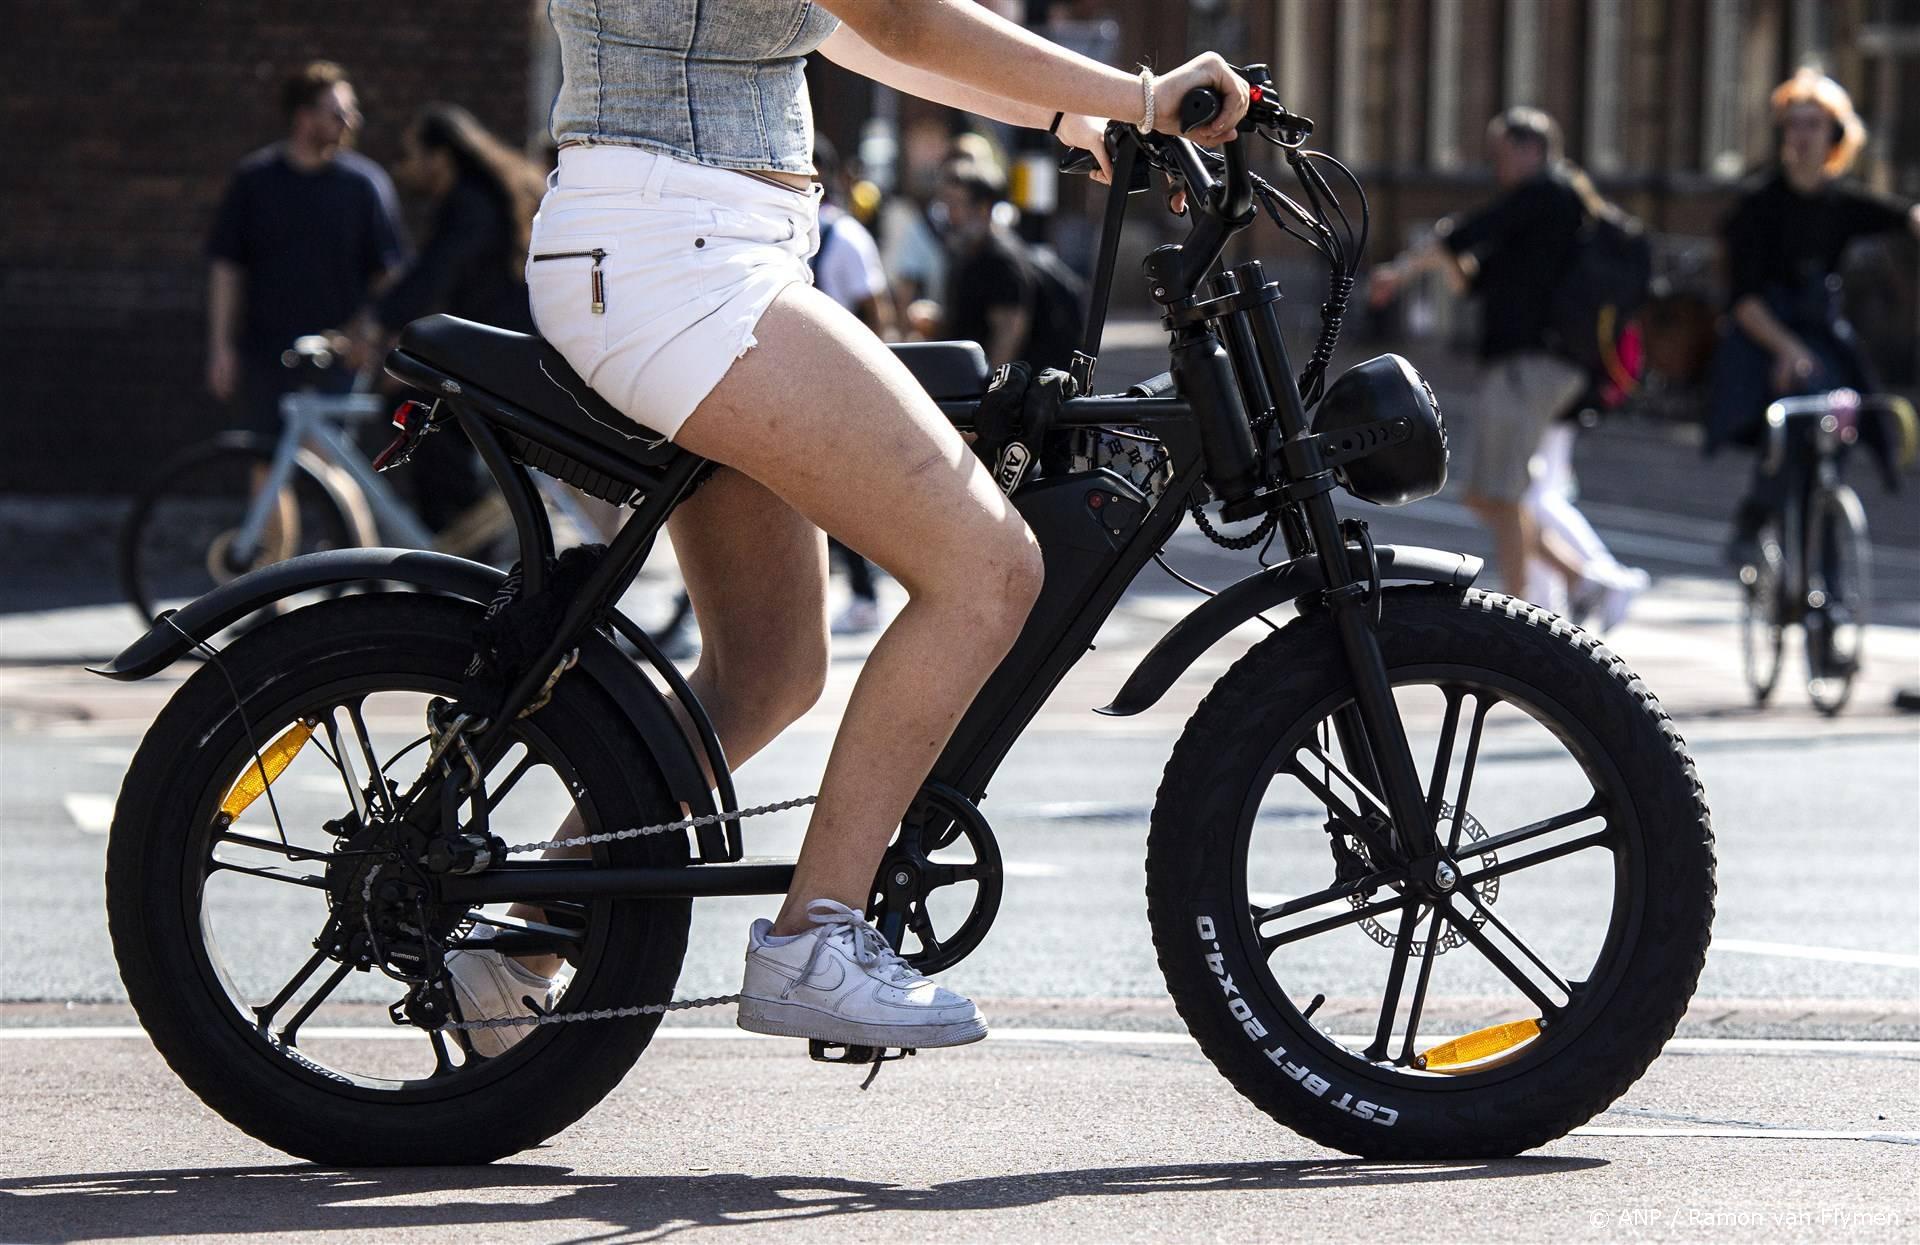 Fatbikes niet alleen maar slecht, betuigt fietsexpert: ‘Maar regelgeving is hard nodig’